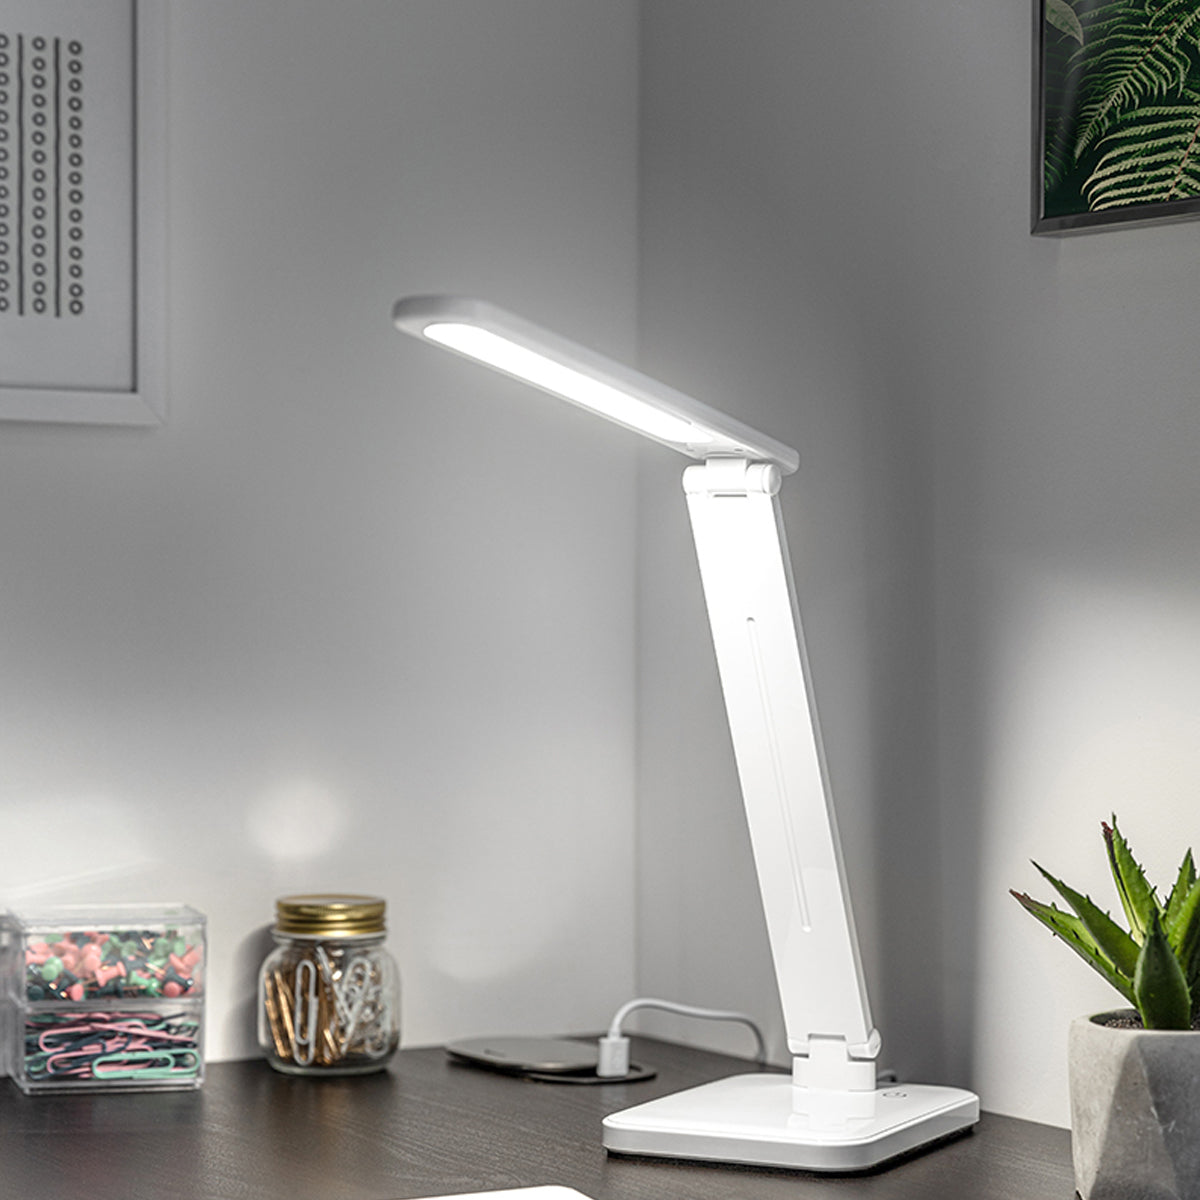 CGC IZZY White LED Desk Lamp